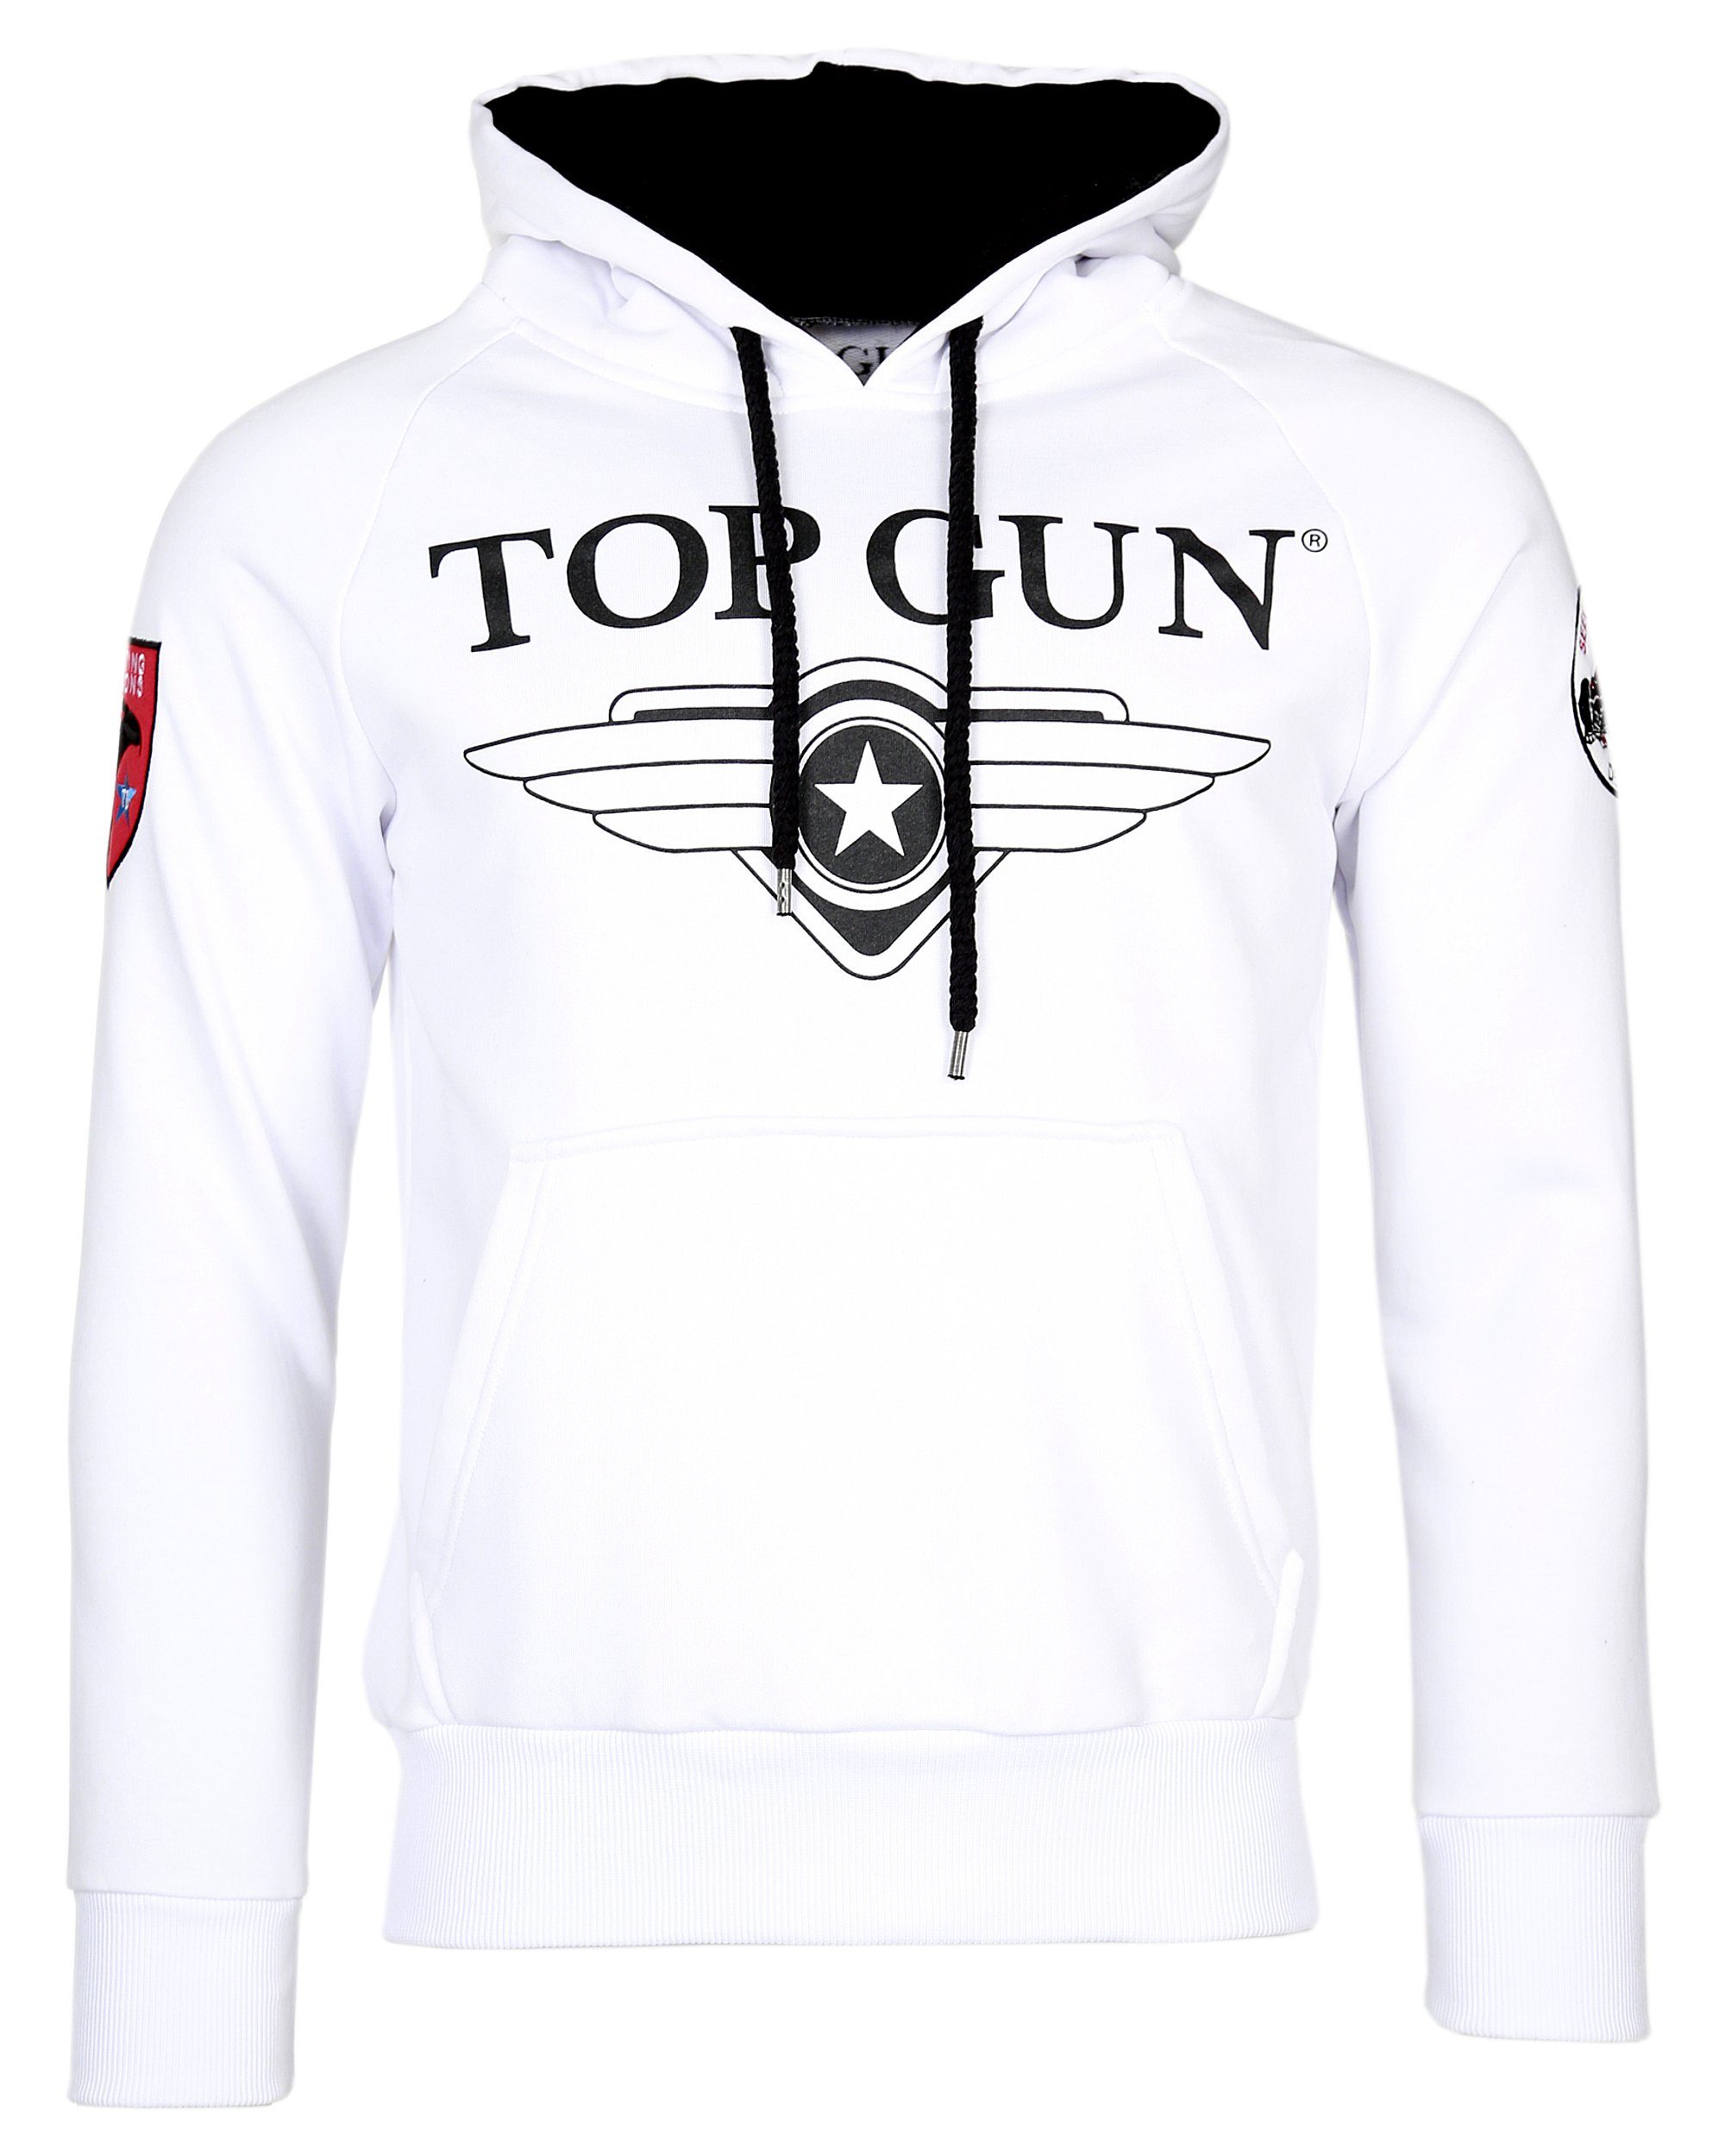 Top Fronttasche Gun Hoodie Defender TG20191012, mit Kapuzenpullover praktischer GUN von Weicher TOP